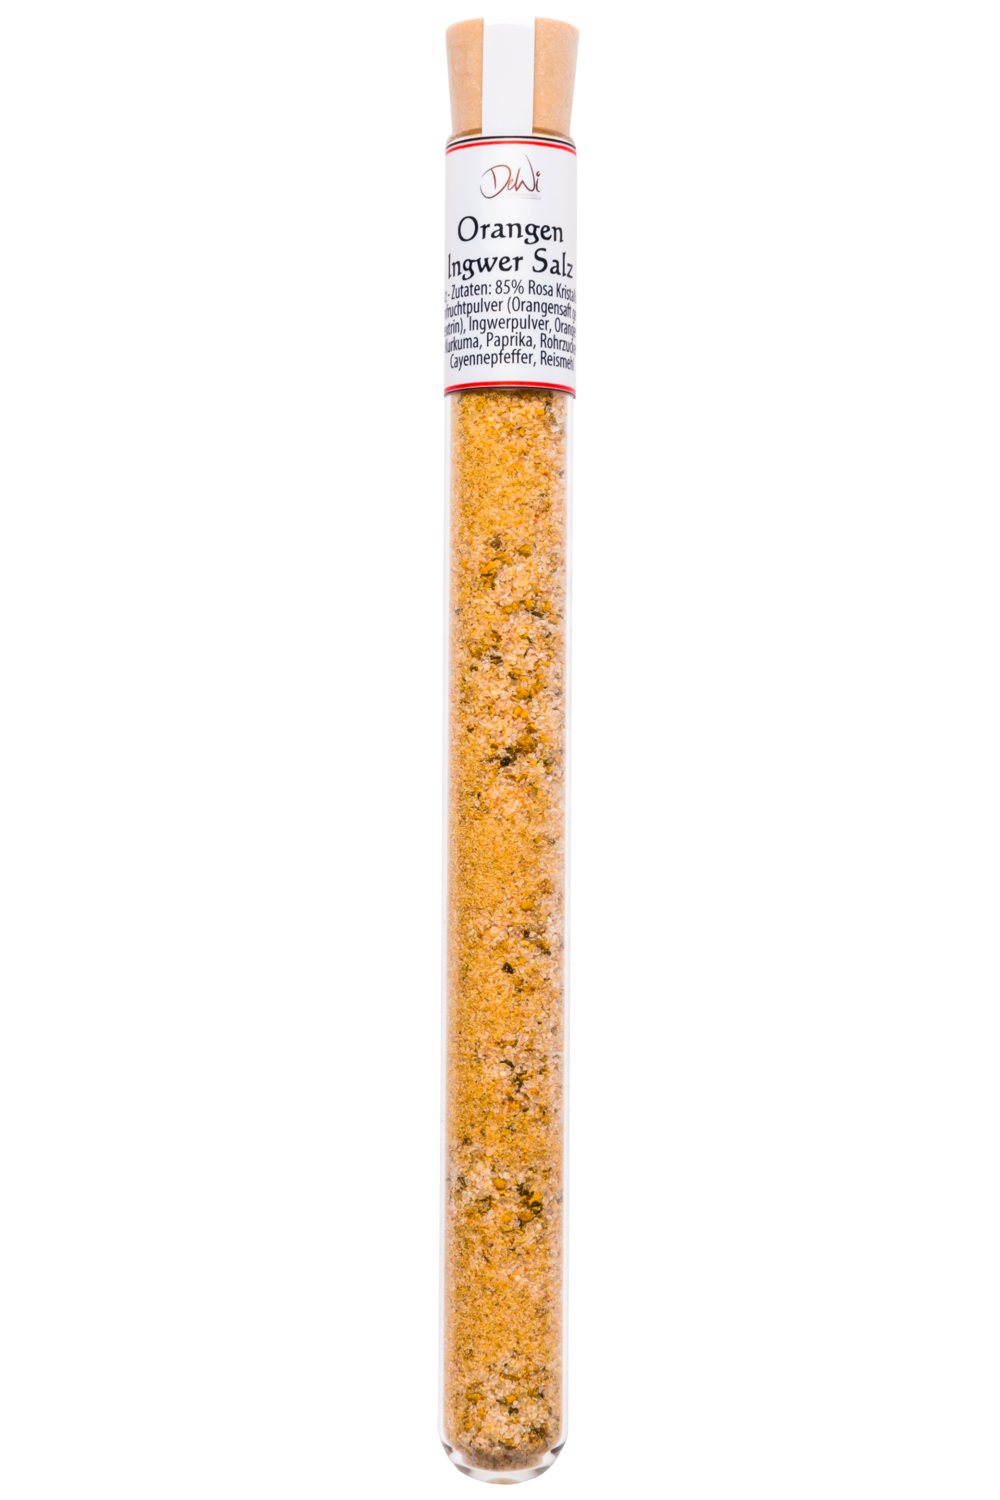 Orangen Ingwer Salz im Reagenzglas - Inhalt 18 g (163,90 €/kg)